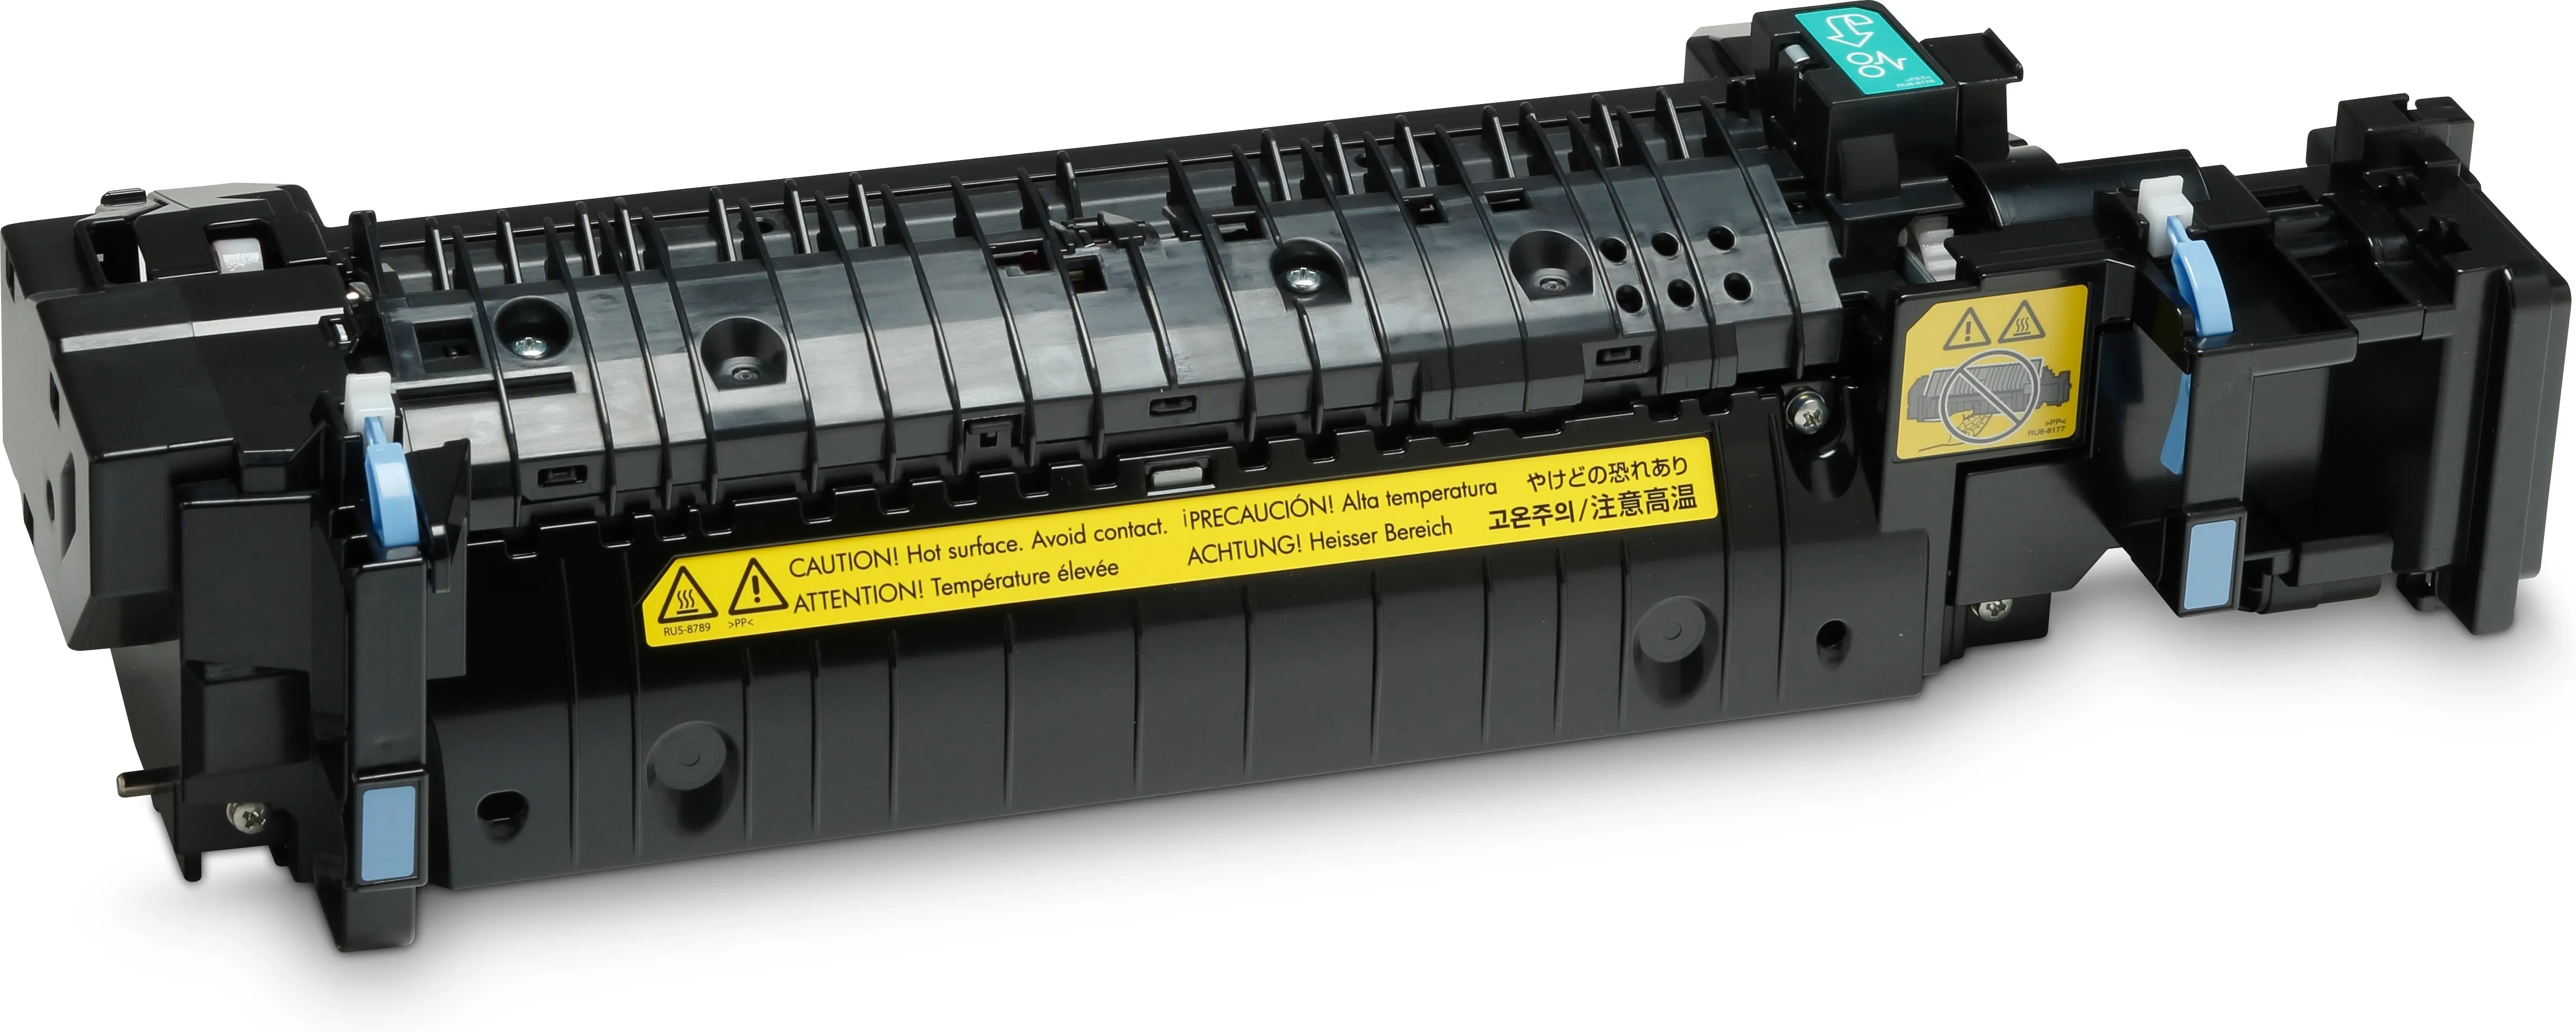 Vente HP LaserJet 220V Maintenance Kit HP au meilleur prix - visuel 6